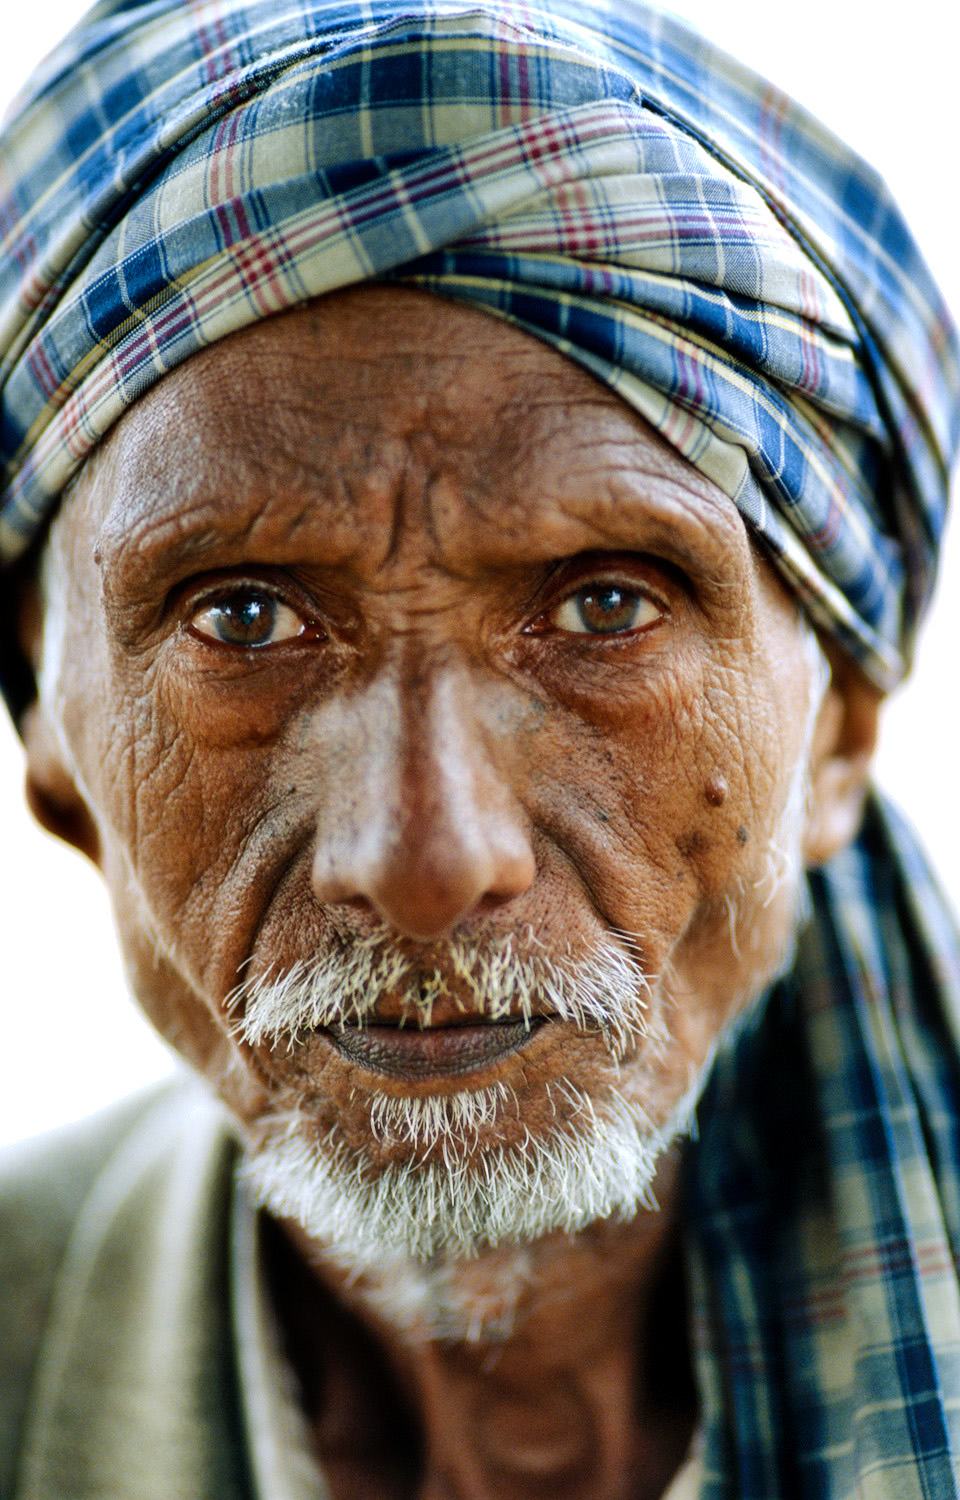 Head shot of old Punjab villager